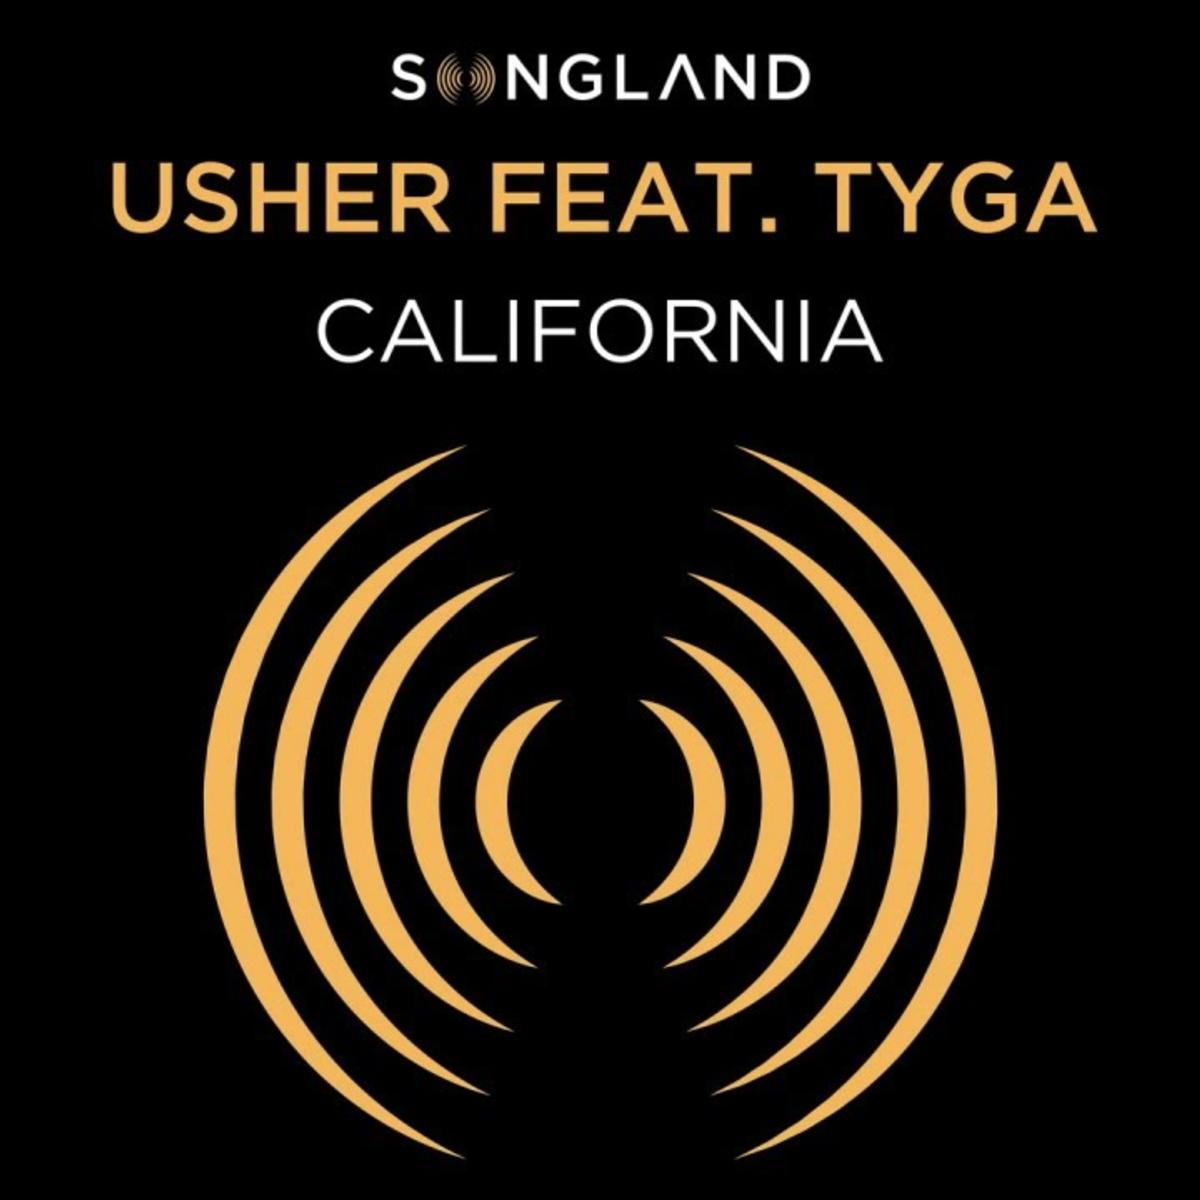 New Music: Usher - California (Featuring Tyga)